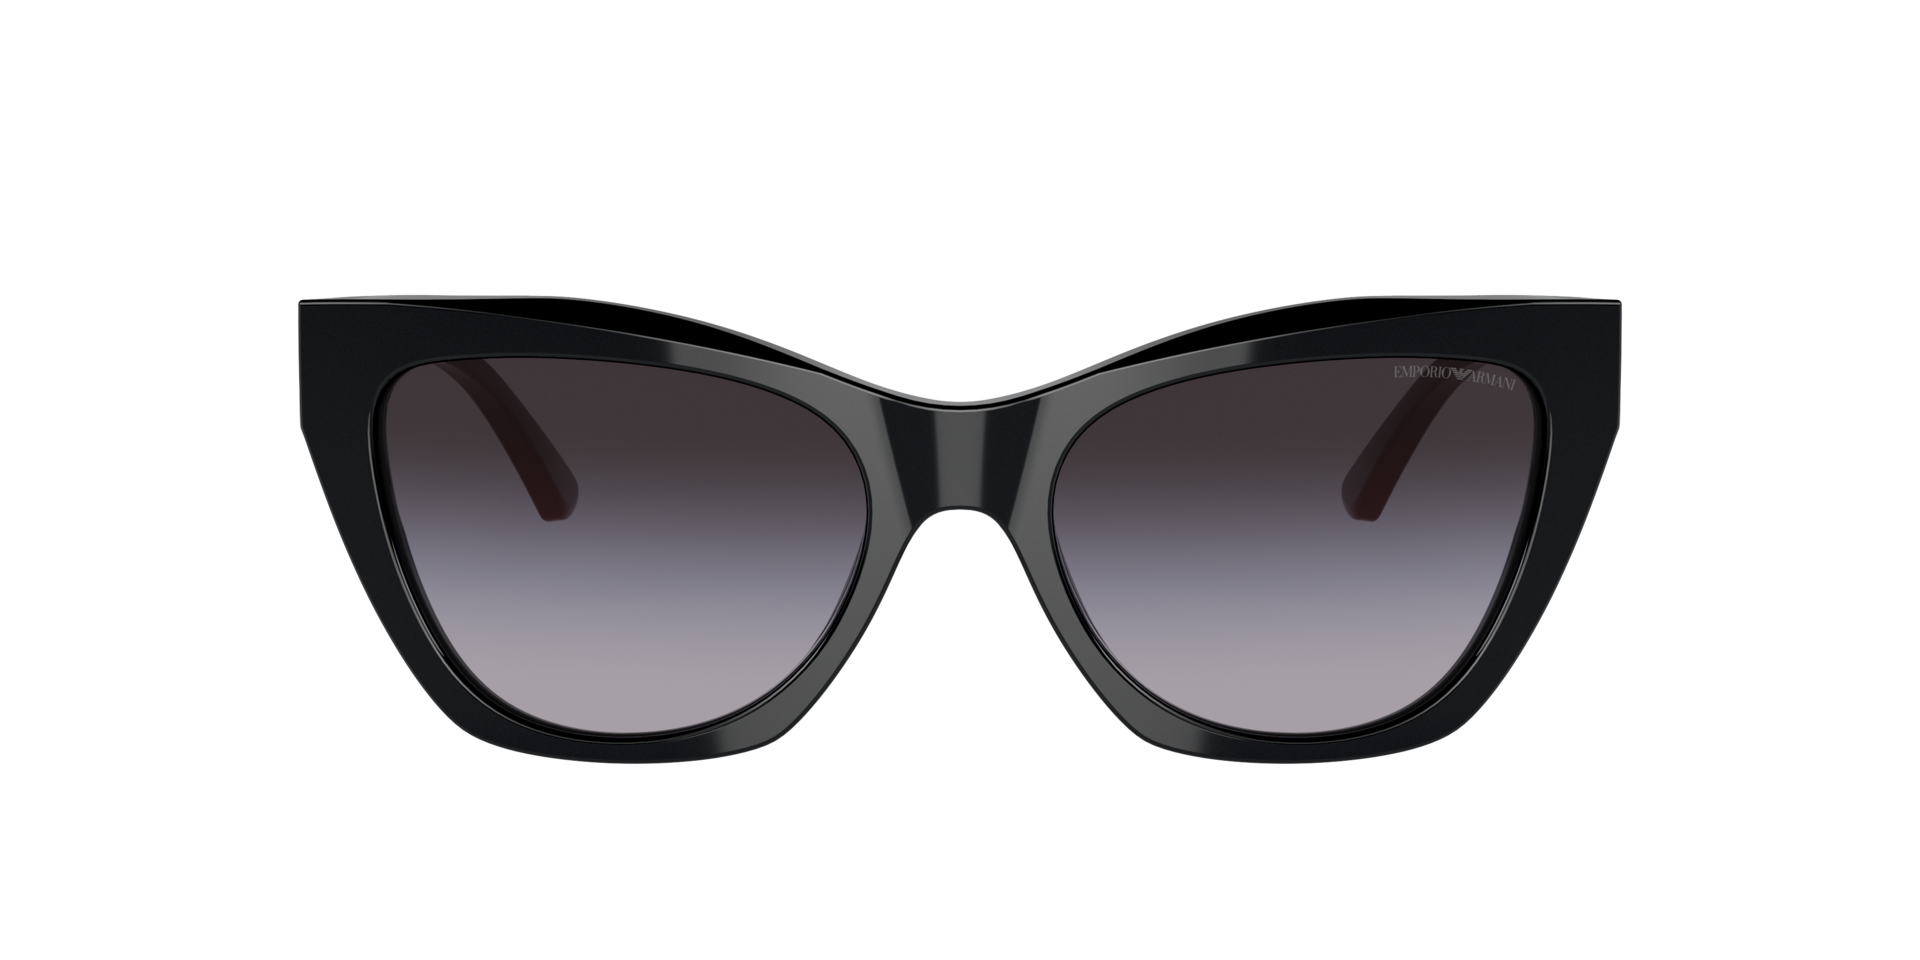 Das Bild zeigt die Sonnenbrille EA4176 50178G von der Marke Emporio Armani in schwarz.